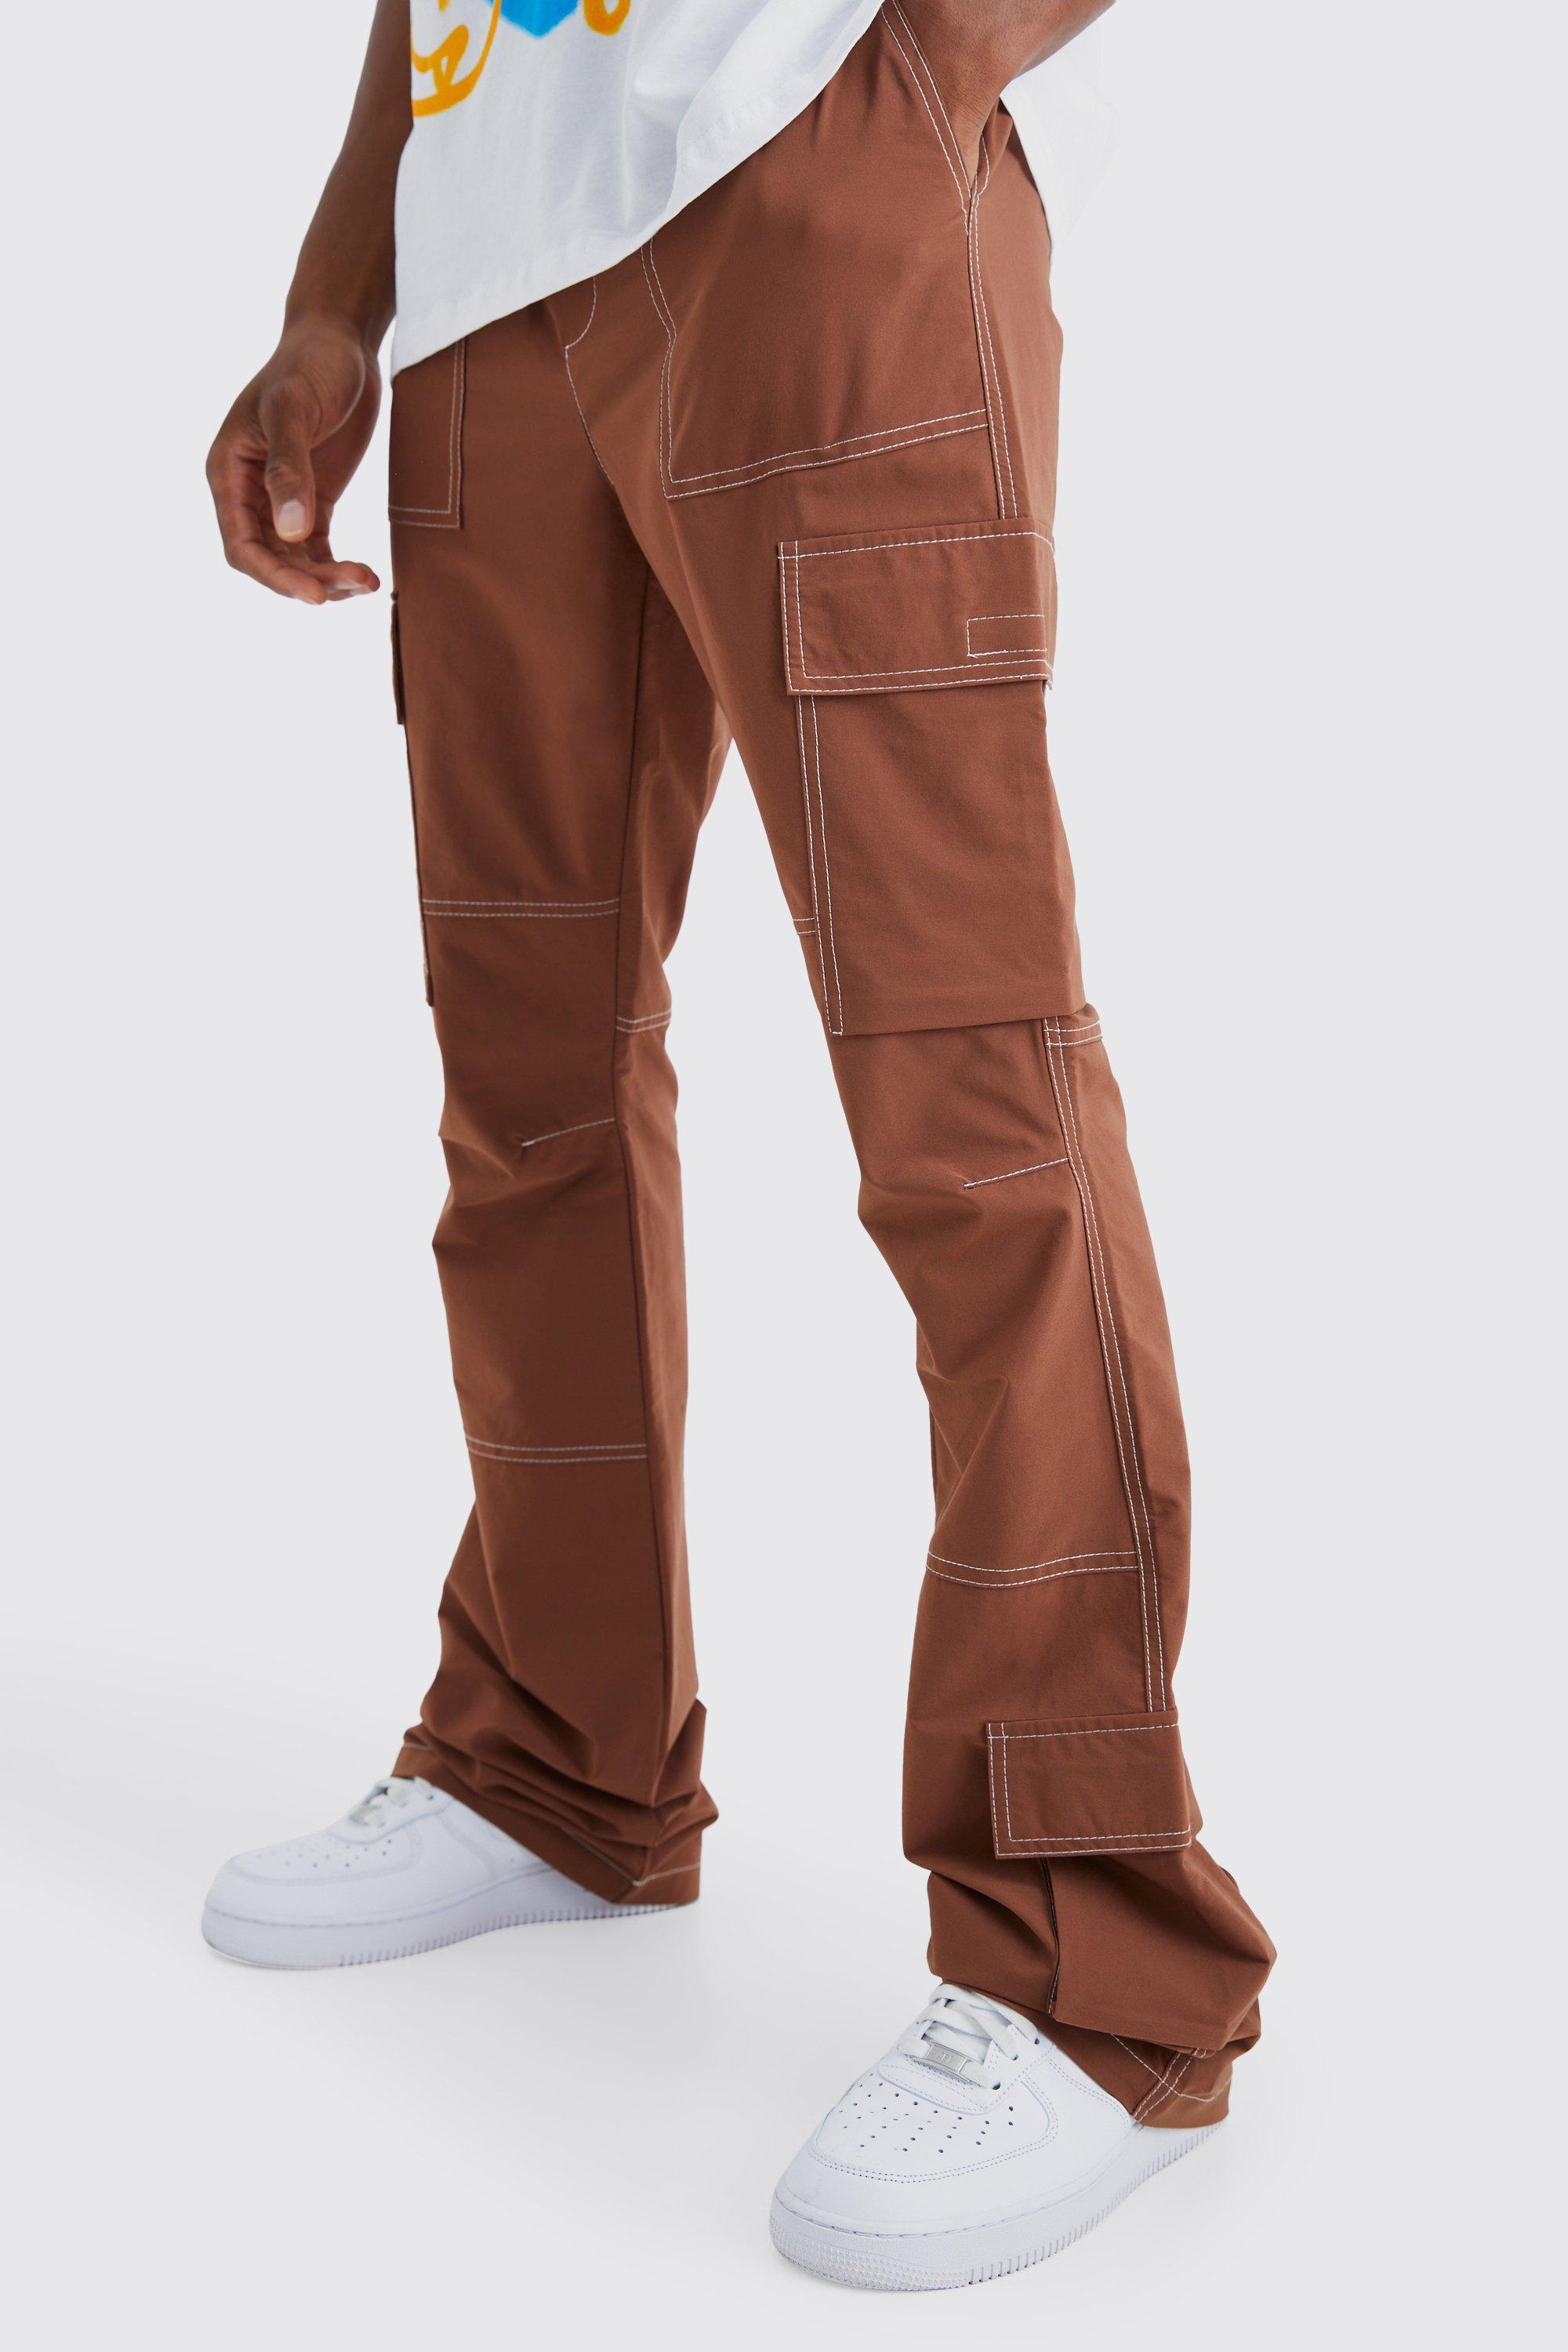 Image of Pantaloni Cargo Slim Fit a zampa con vita elasticizzata e cuciture a contrasto, Brown